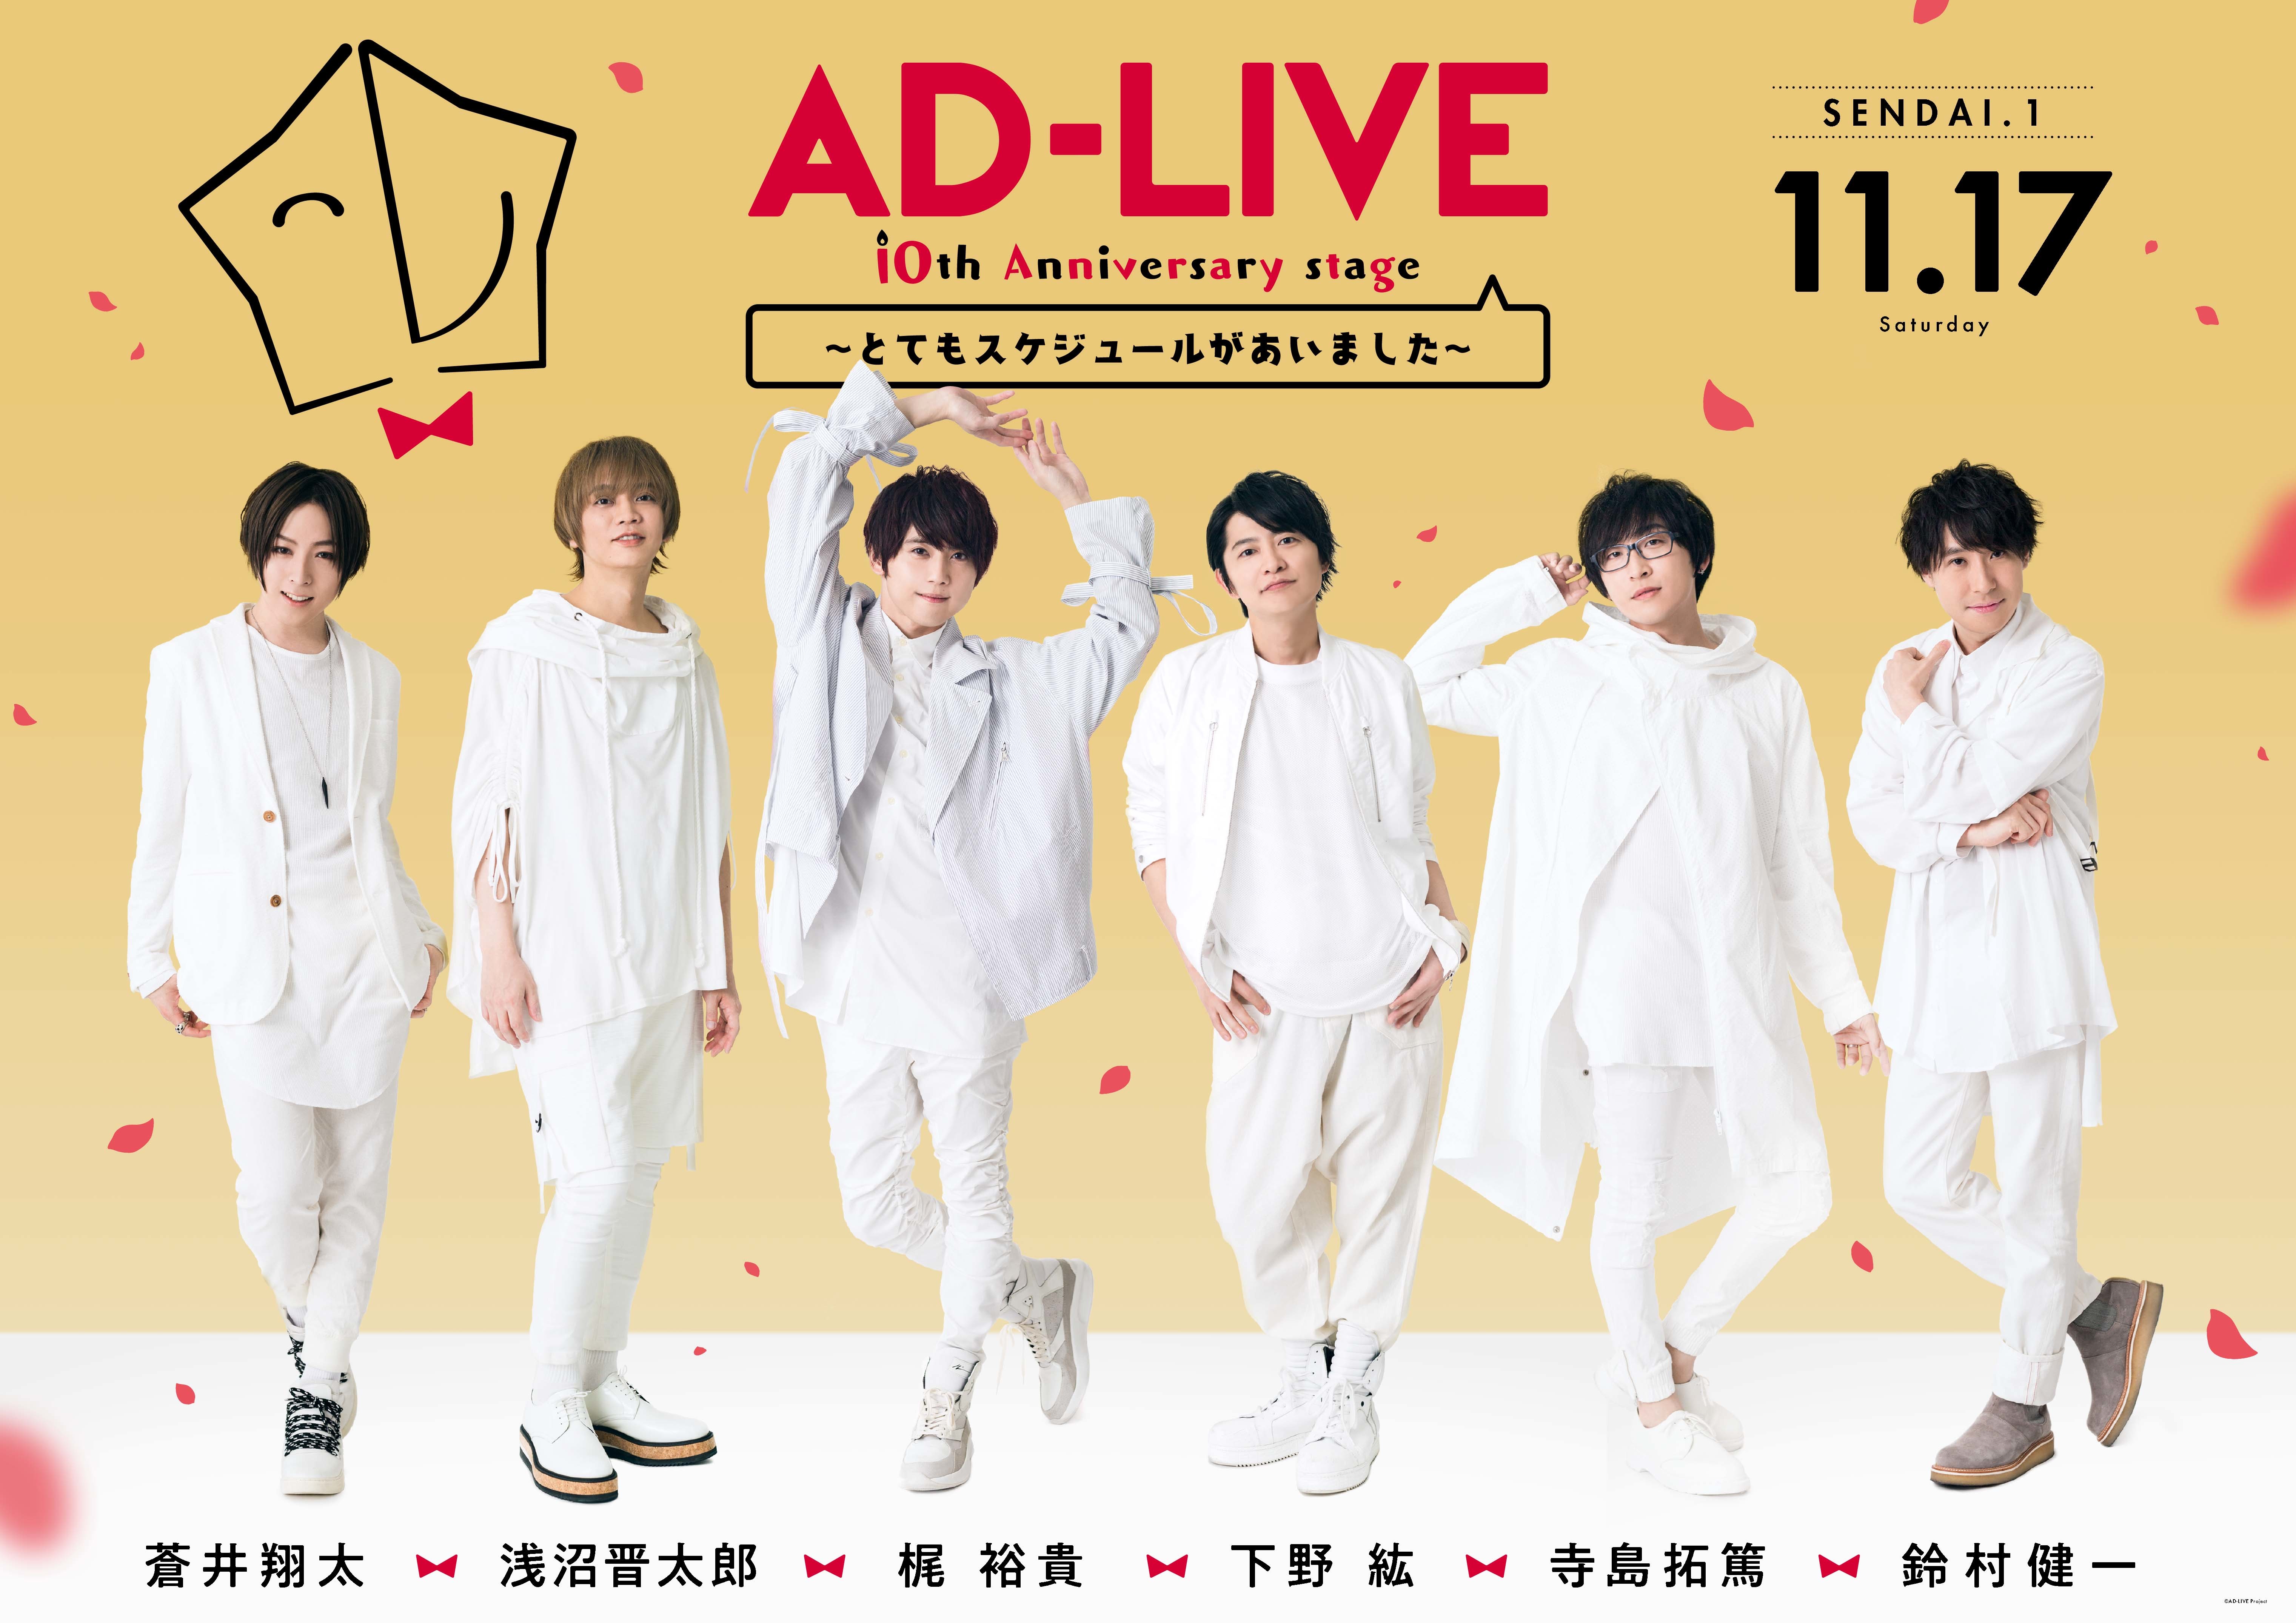 画像】鈴村健一ら声優による舞台劇『AD-LIVE 2018』『AD-LIVE 10th